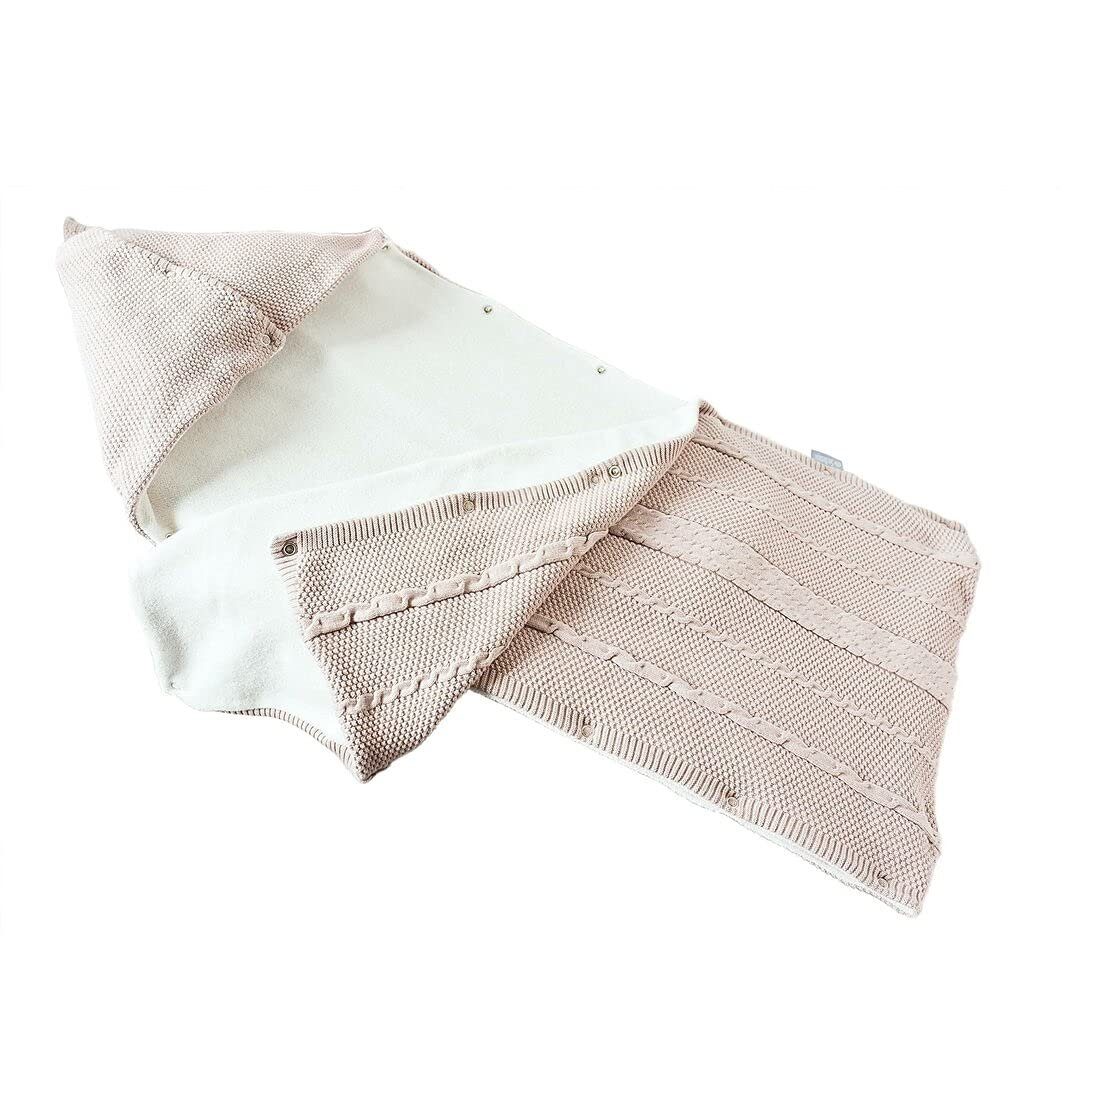 Babydecke Schlafsack gestrickt 100% Baumwolle, SEI Design, in hübscher Geschenk-Verpackung Natur